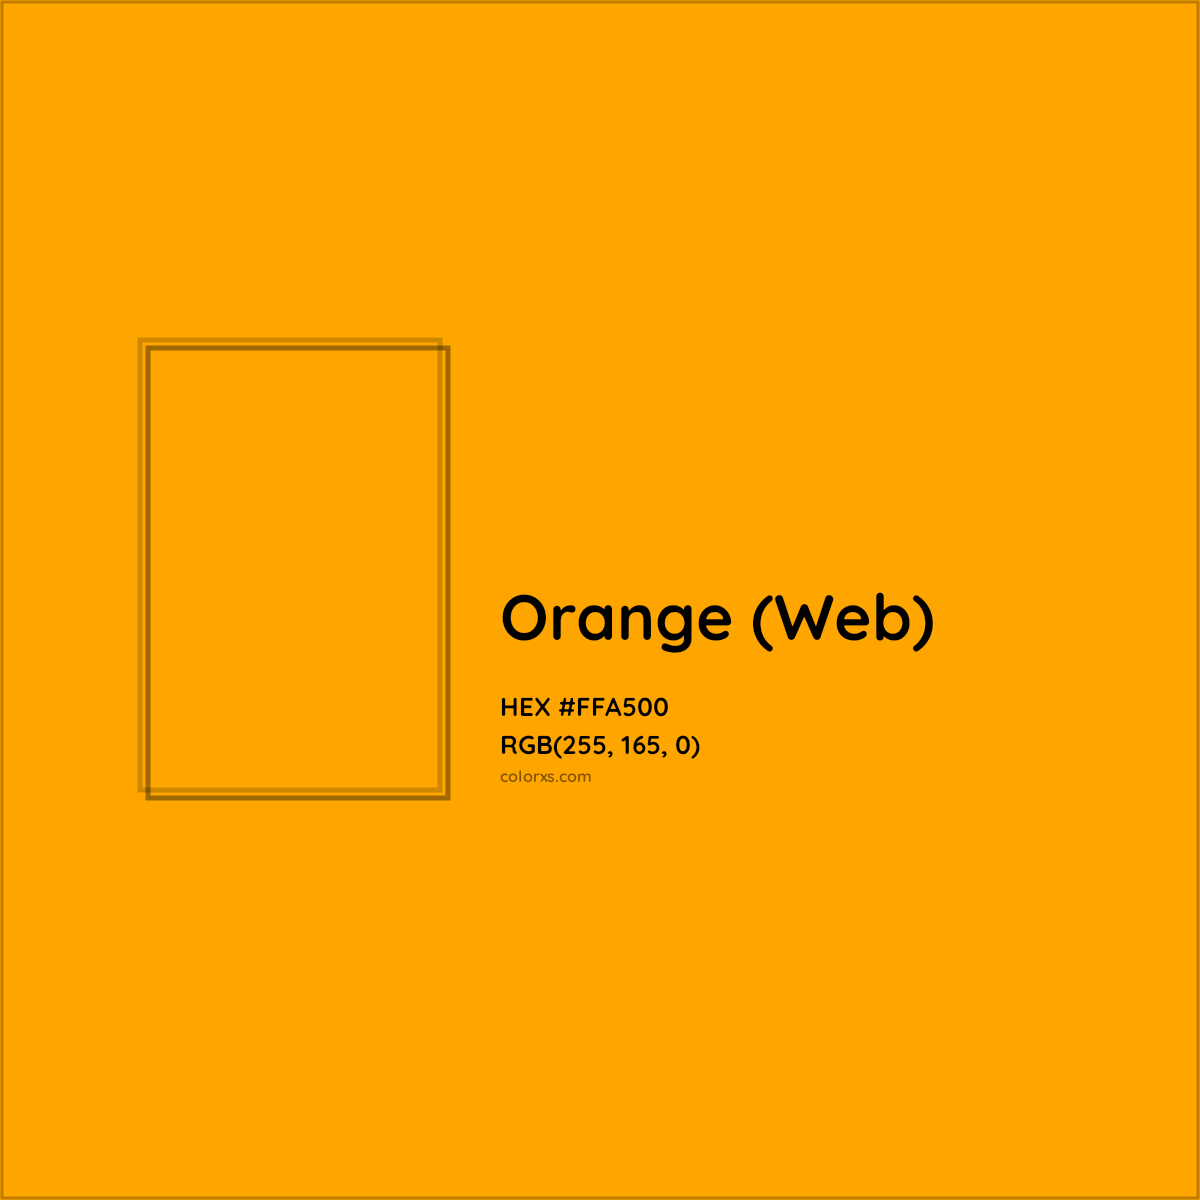 HEX #FFA500 Orange (Web) Color - Color Code